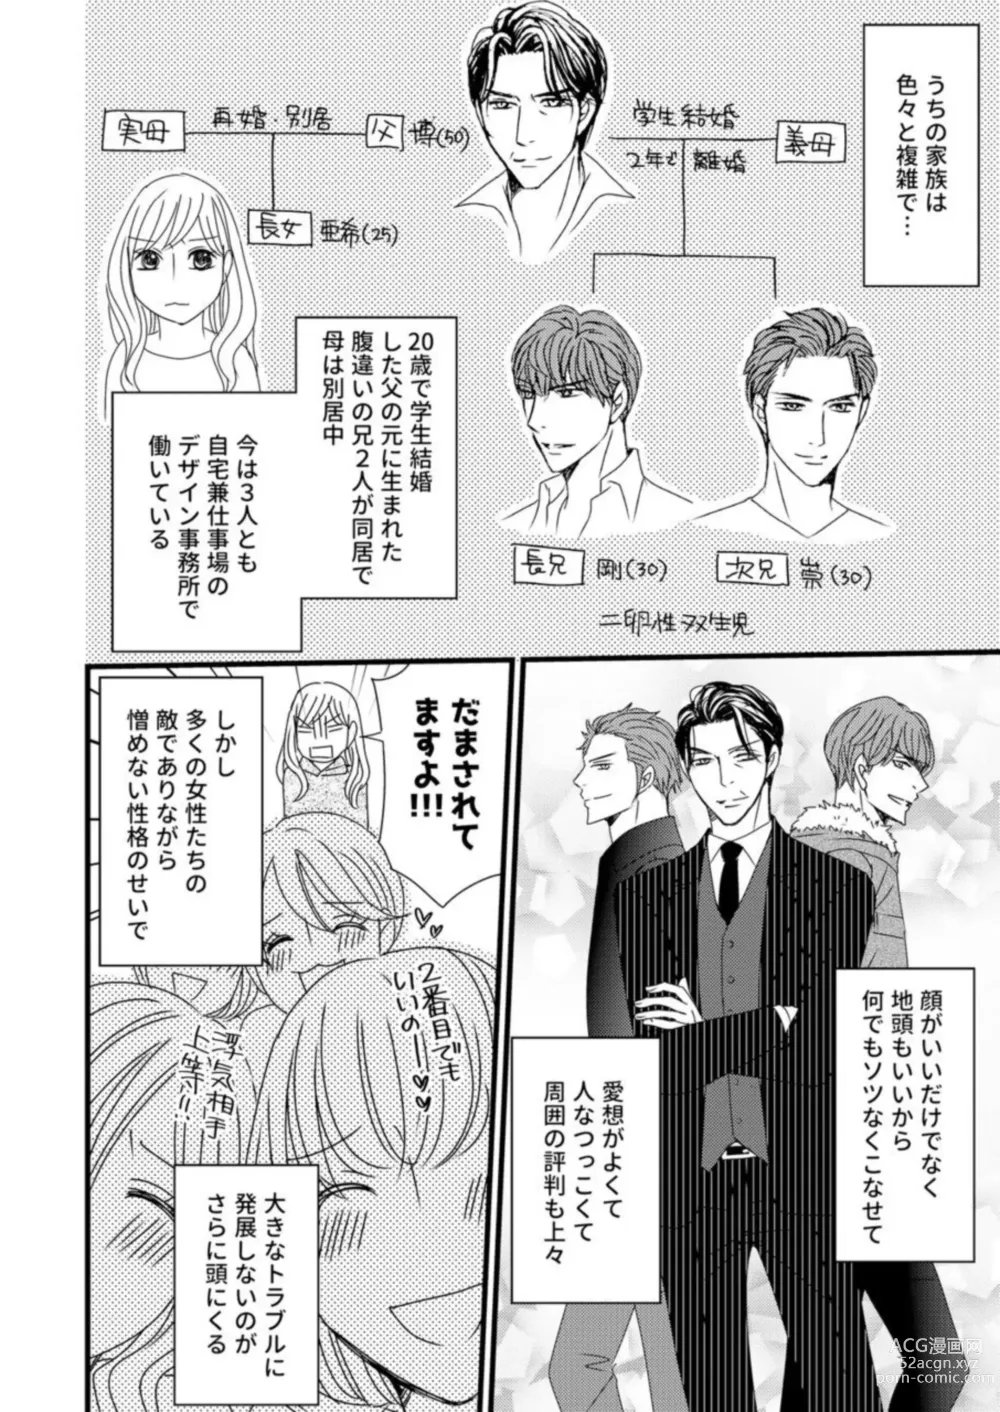 Page 12 of manga Takane no koi wa Mendokusai 1